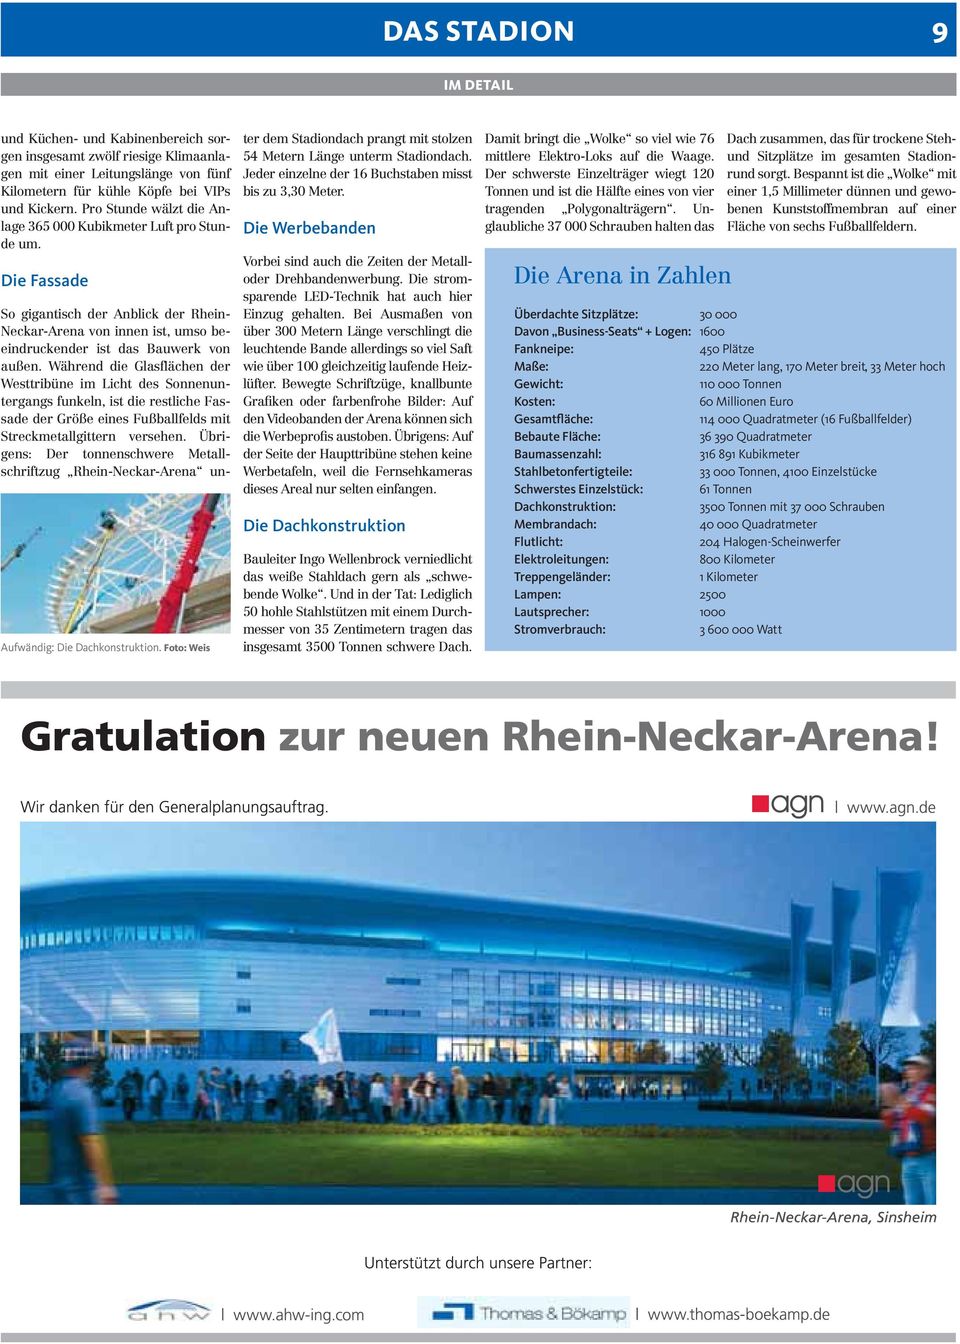 Foto: Weis So gigantisch der Anblick der Rhein- Neckar-Arena von innen ist, umso beeindruckender ist das Bauwerk von außen.